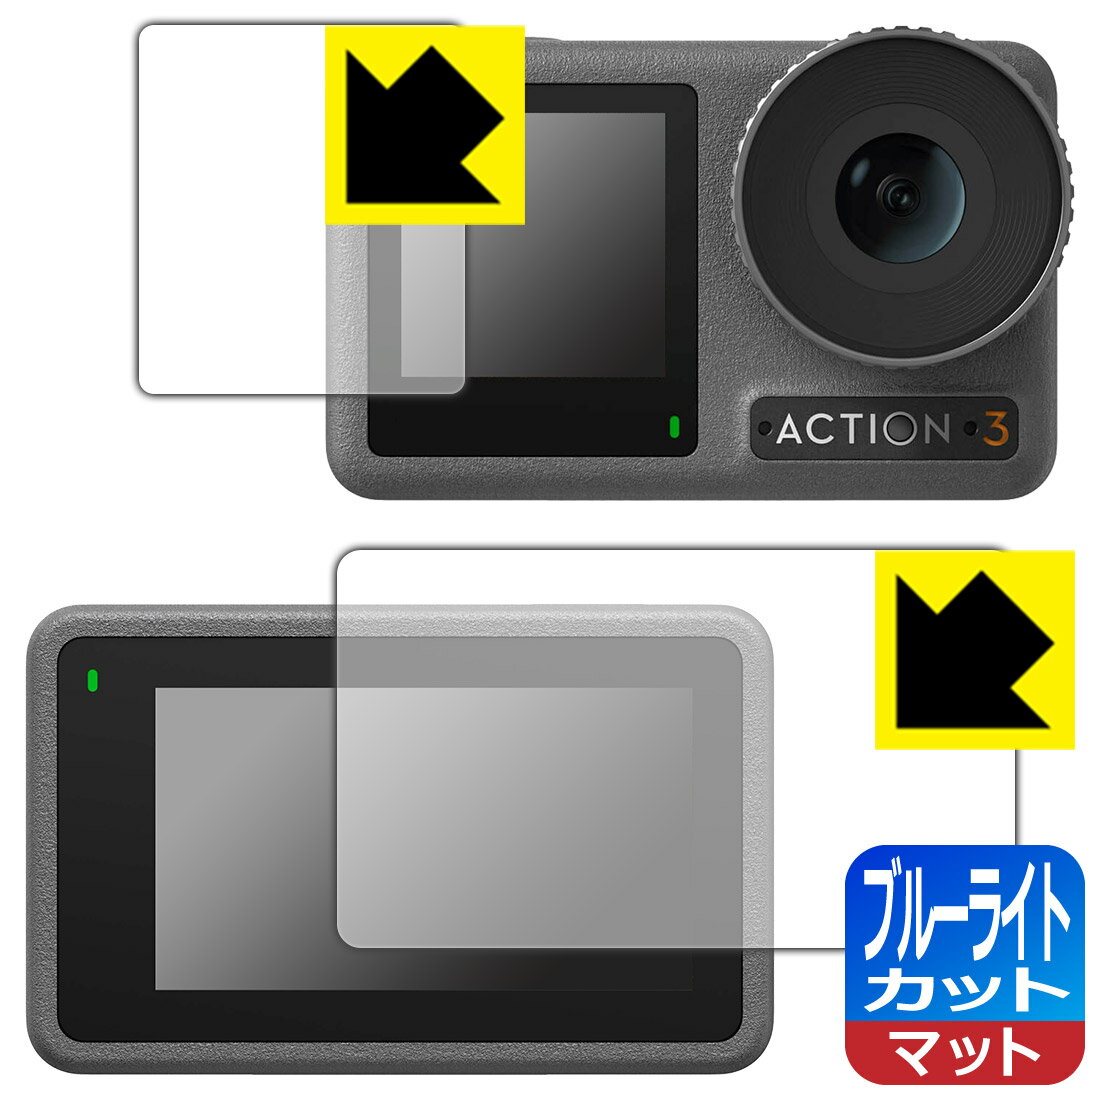 ブルーライトカット【反射低減】保護フィルム DJI Osmo Action 3 (メイン用/サブ用) 日本製 自社製造直販